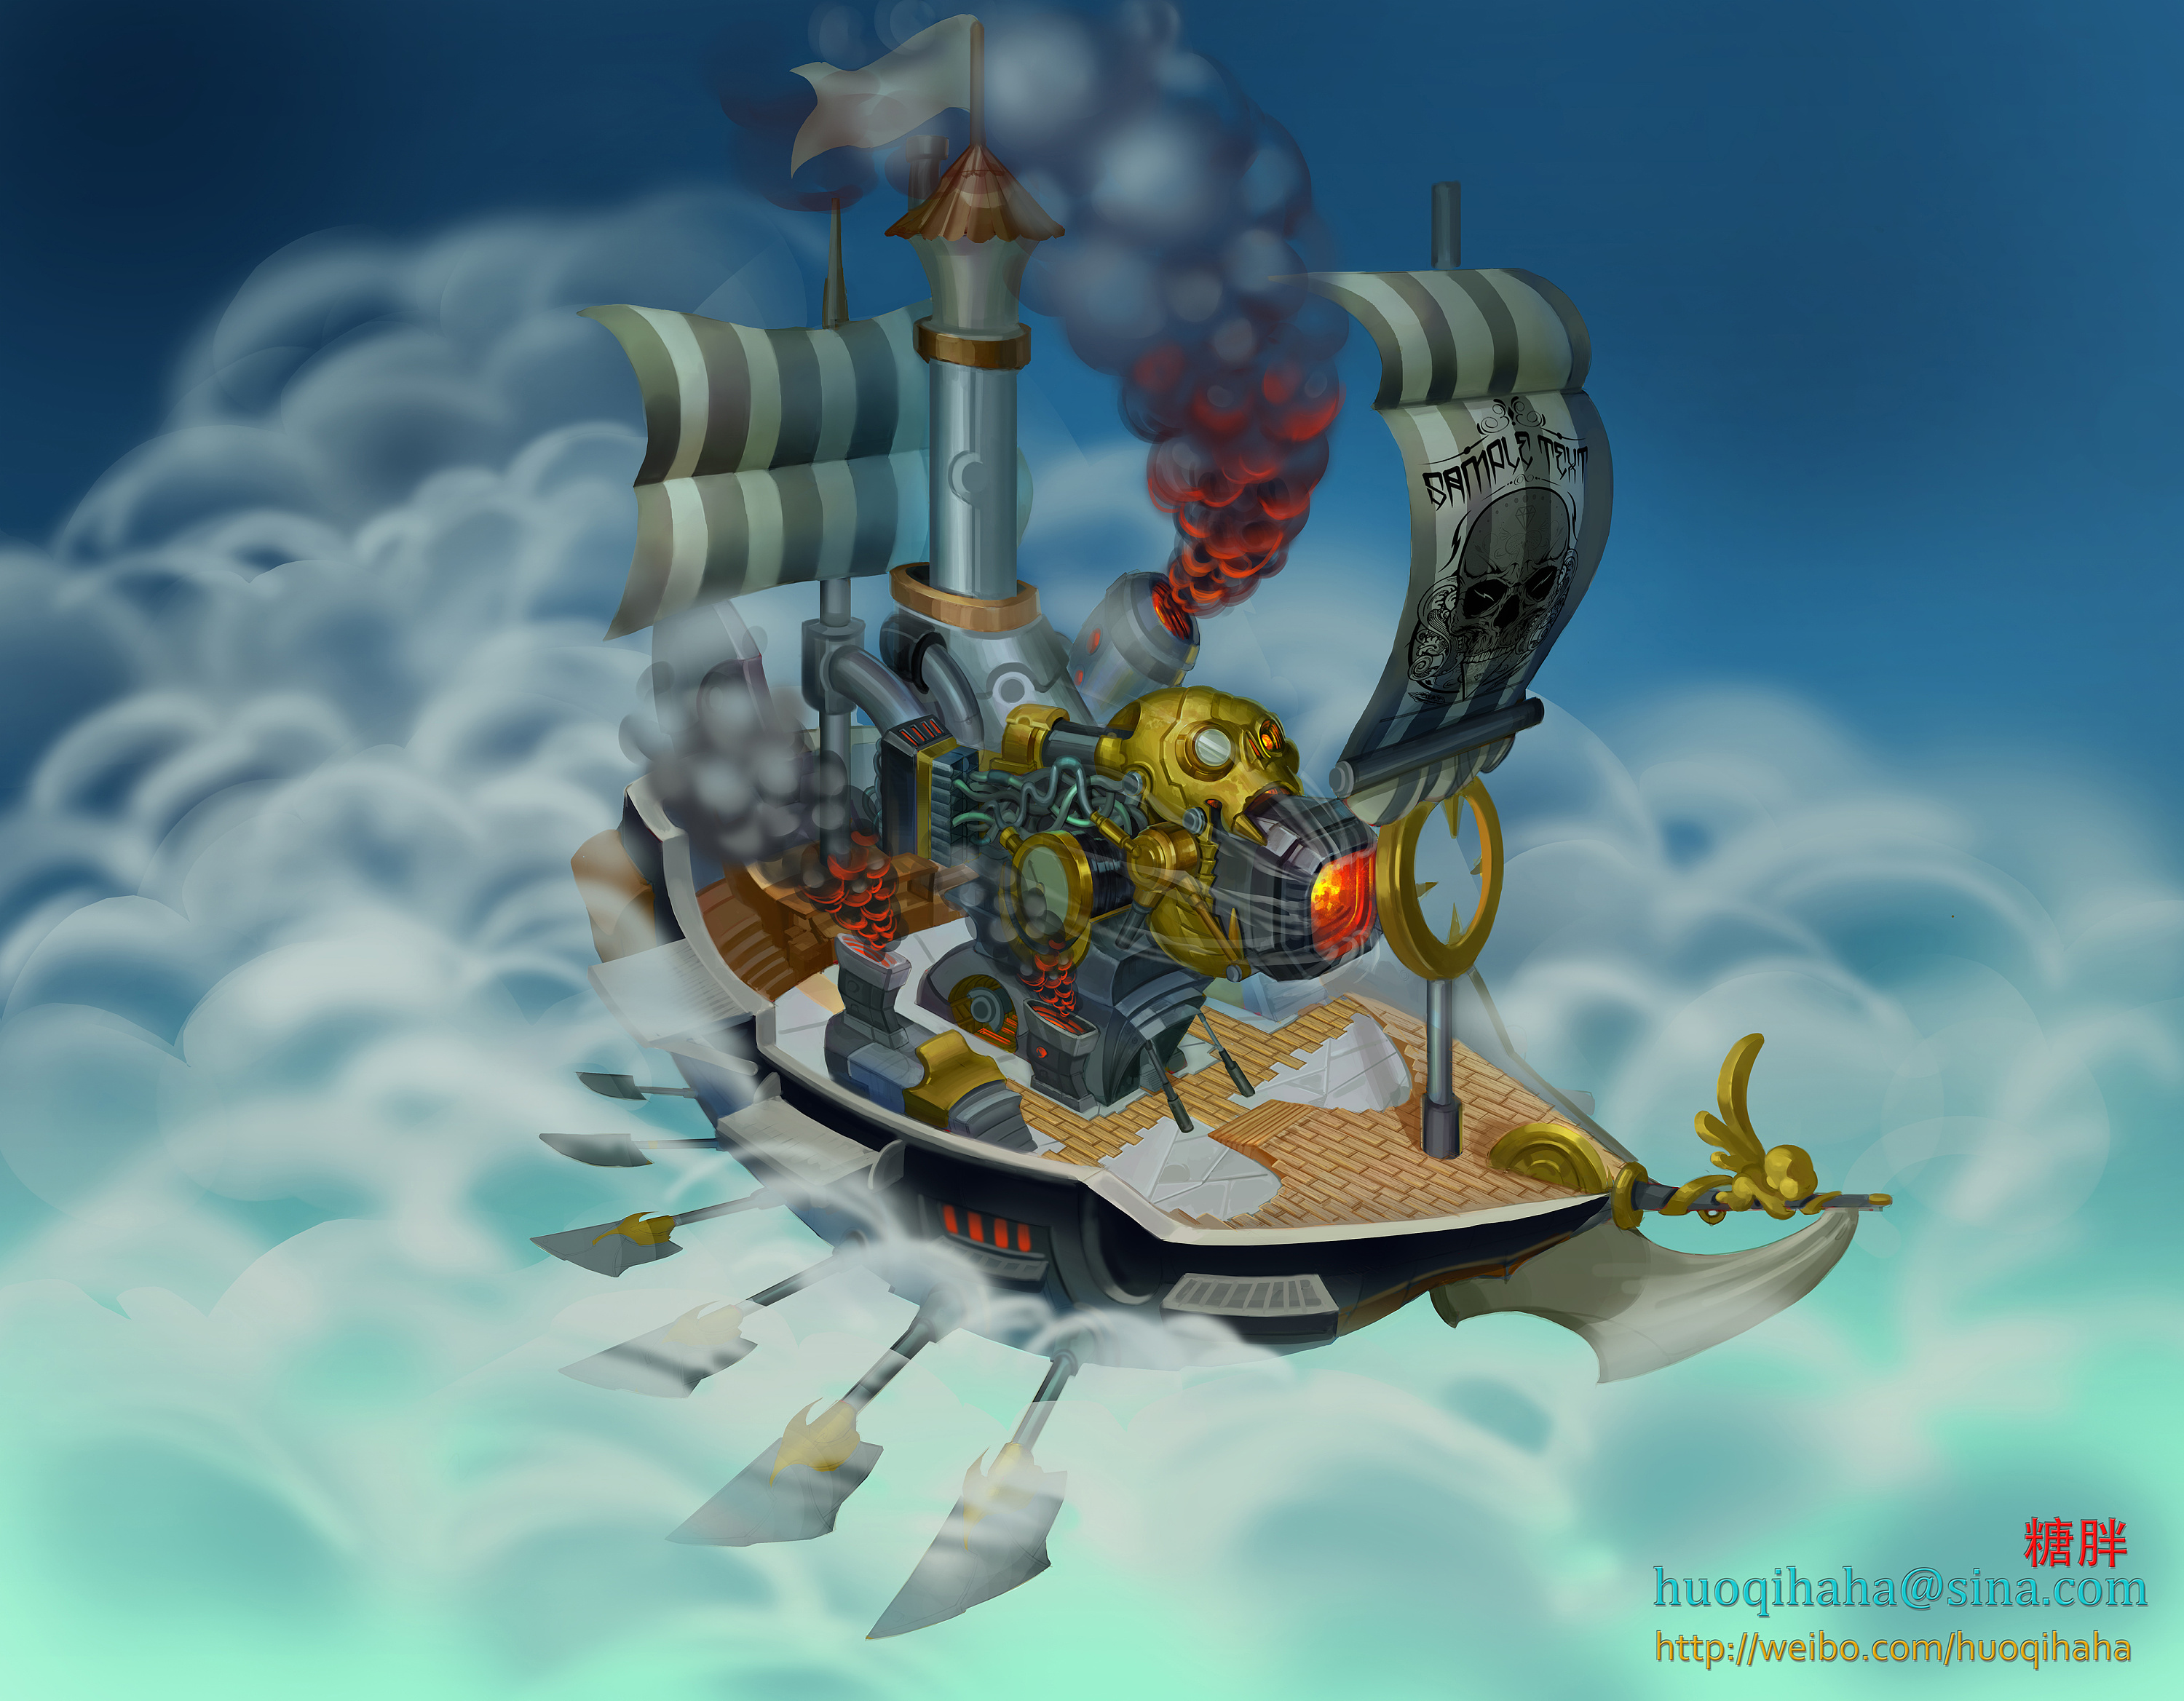 加勒比海盗舰船设计之传说级主舰 由 土顽毛 创作 | leewiART 乐艺 建立你的个人艺术画廊，汇聚优秀的CG艺术作品